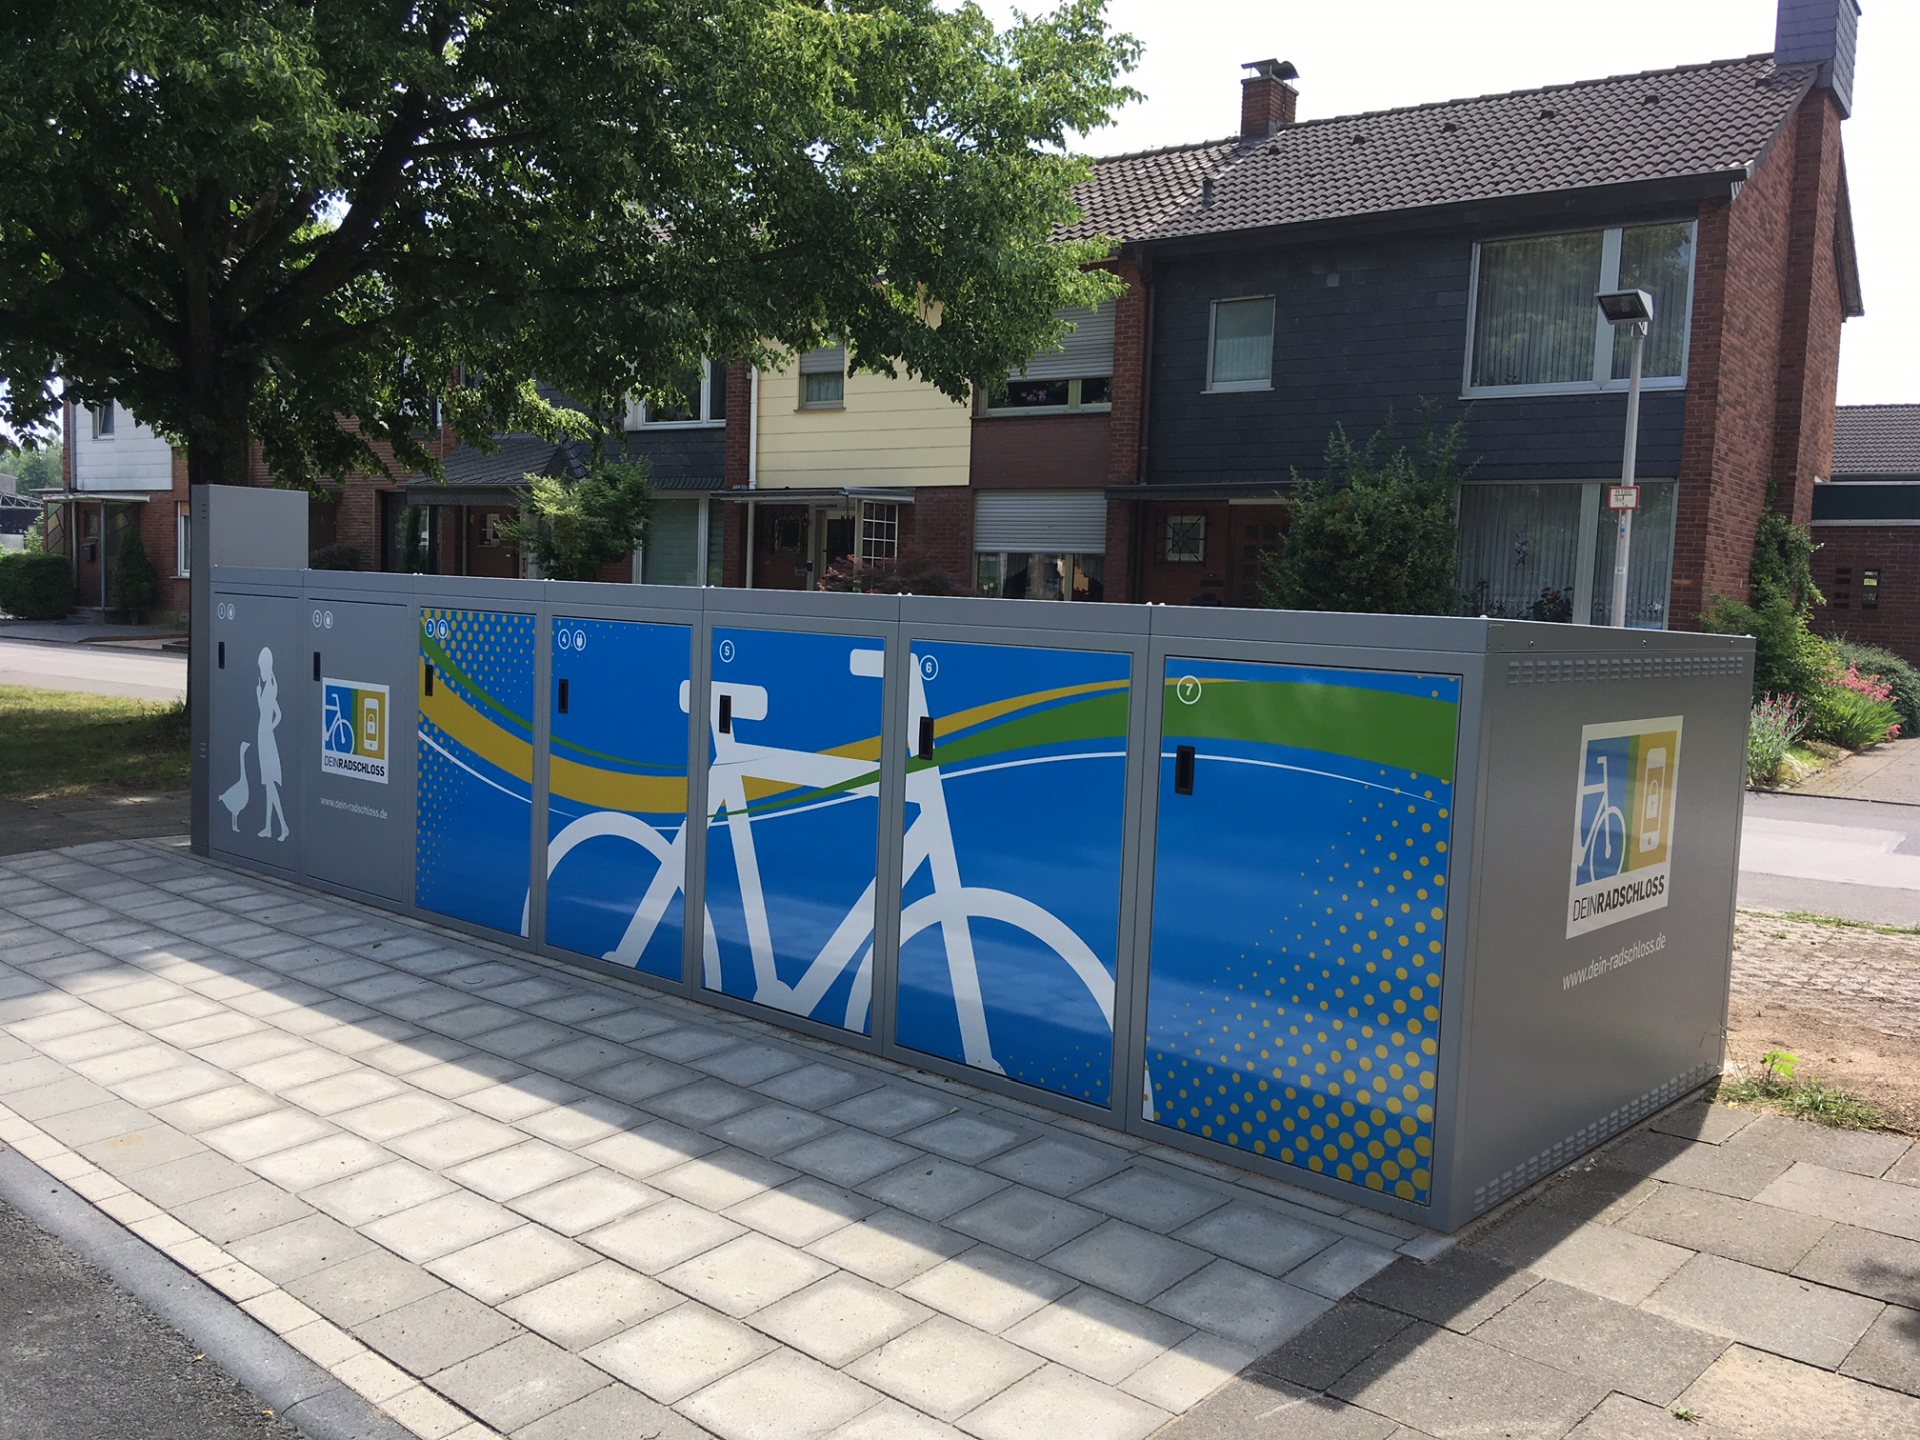 DeinRadschloss-Fahrradboxen Monheim am Rhein Opladener Straße